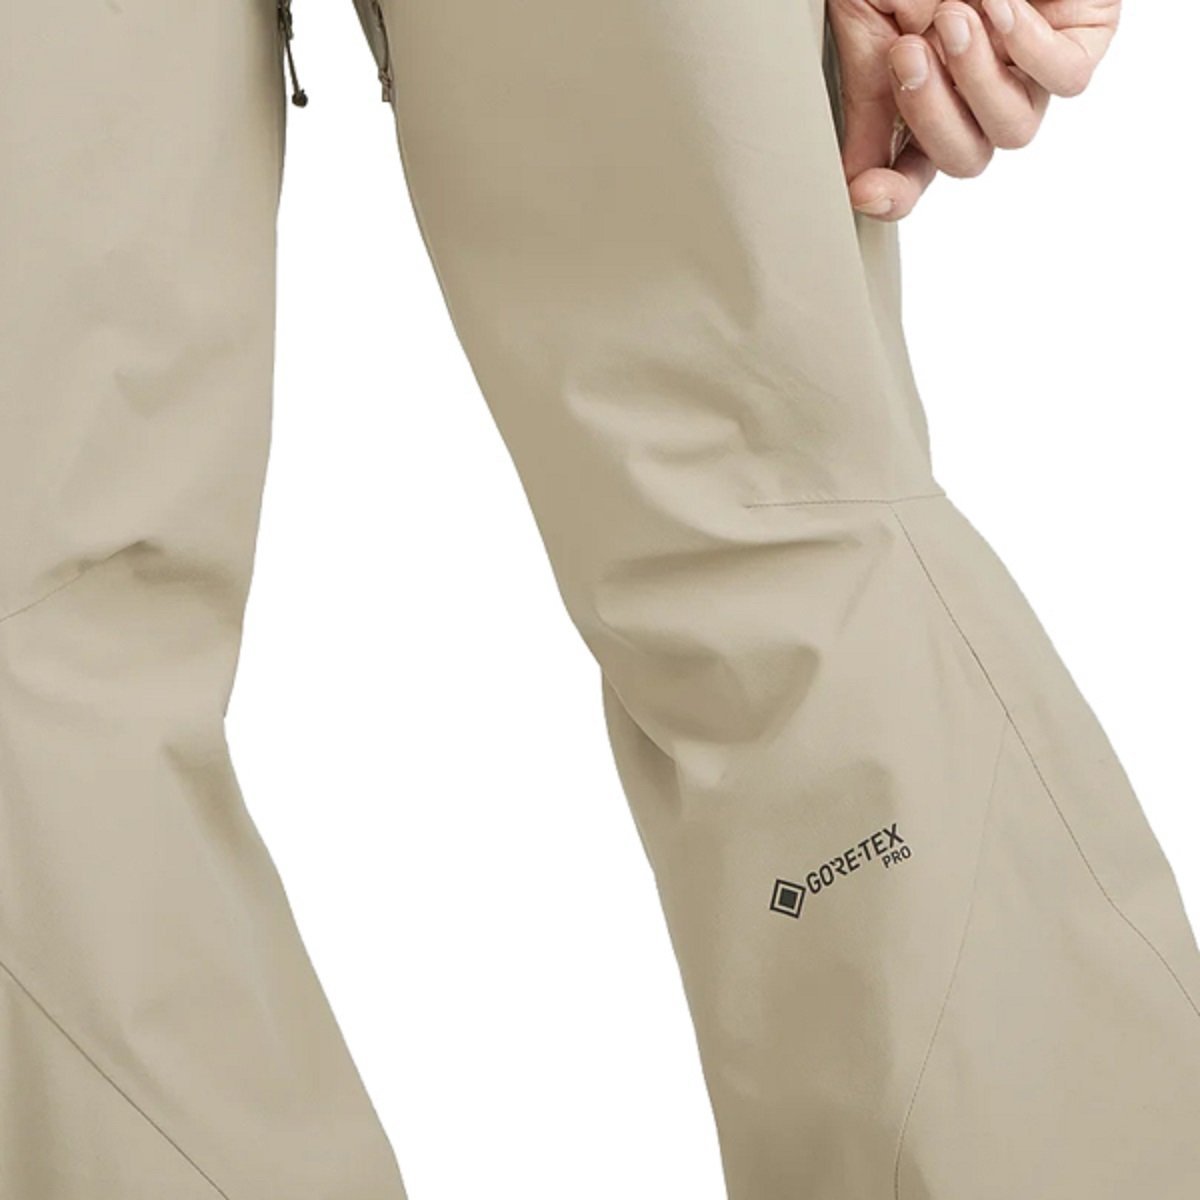 Lyžiarske nohavice Salomon S/Lab Qst GTX® Pro 3L Pant M - béžová